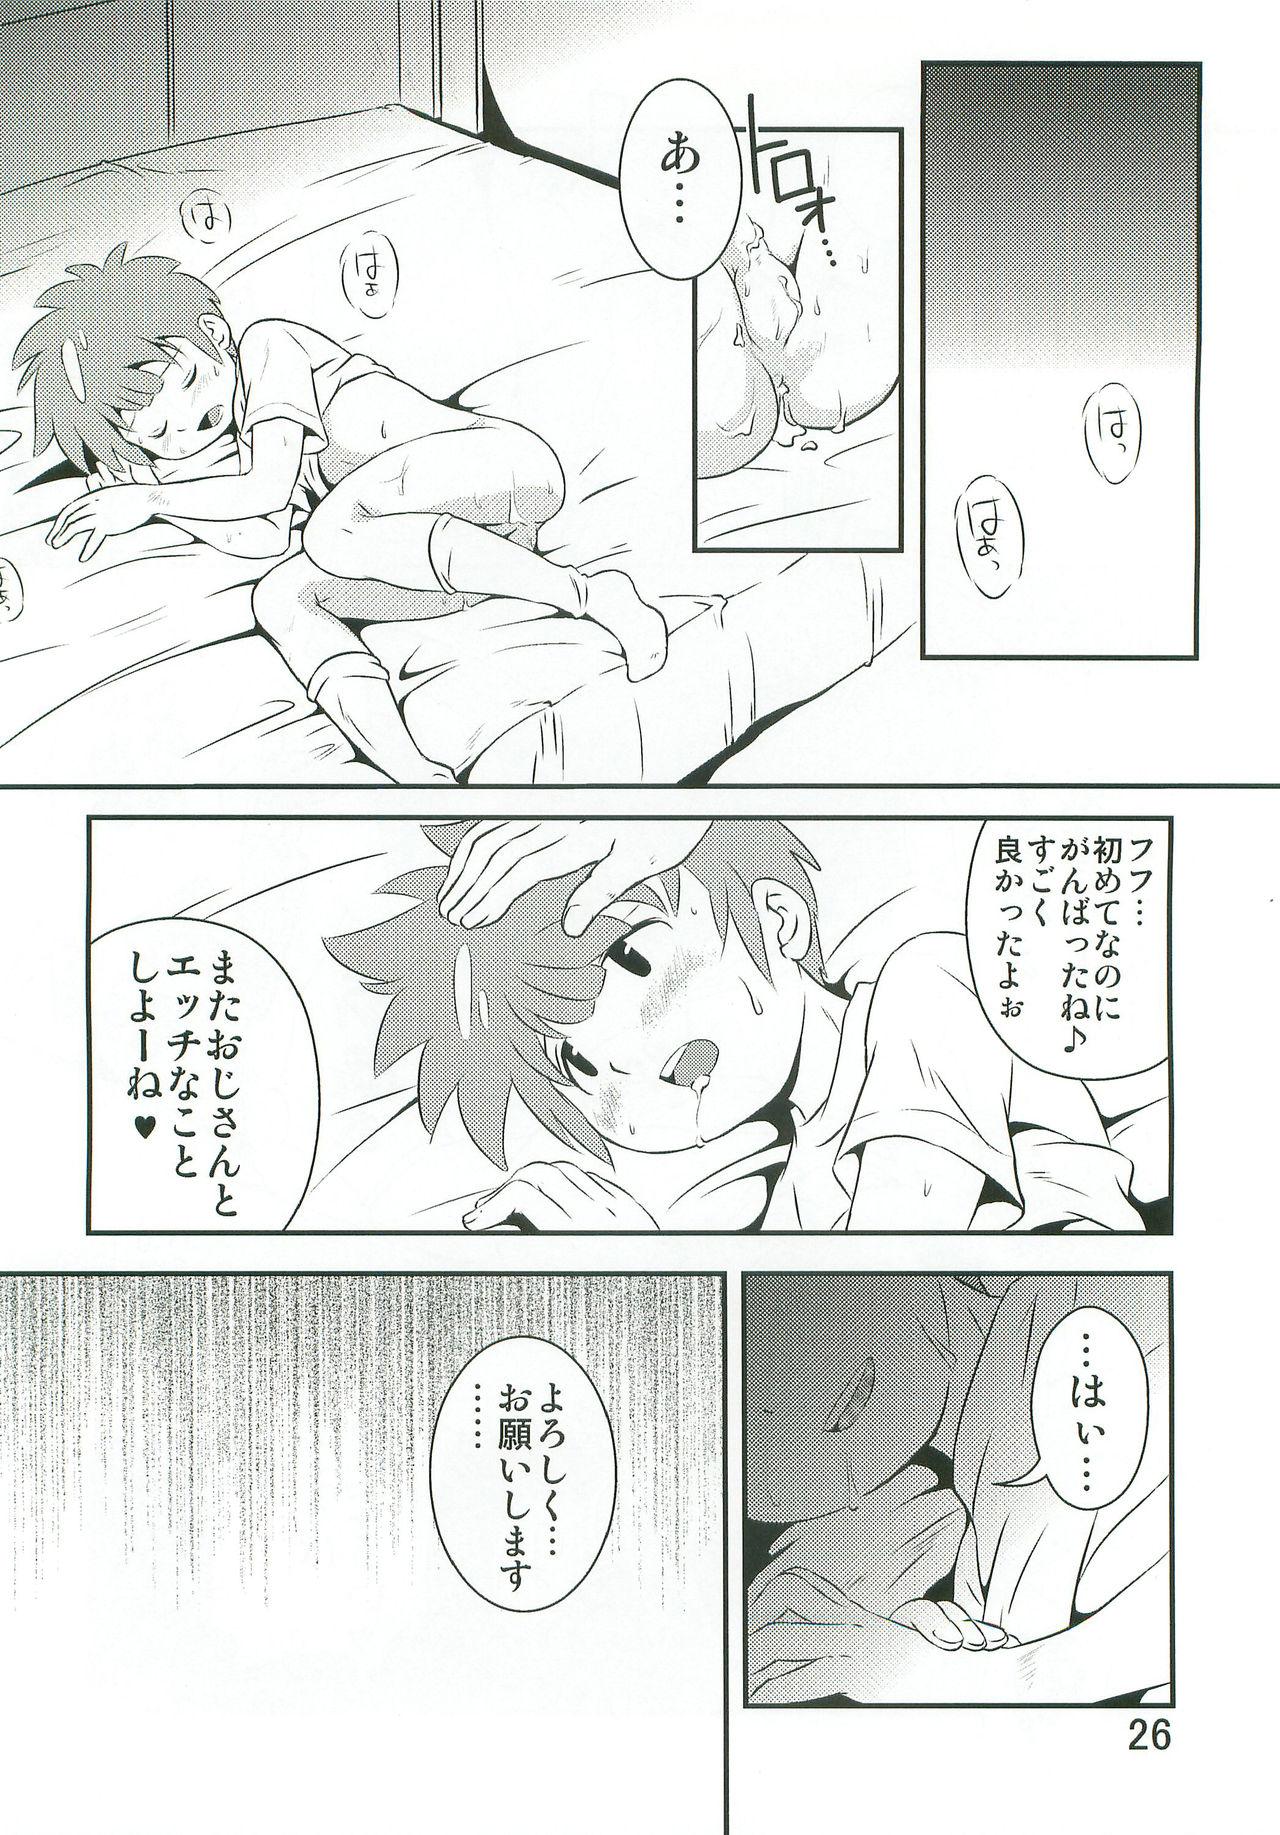 Letsdoeit Tachimukai ga nanka Ecchii Koto Shiteru Hon - Inazuma eleven Coed - Page 25